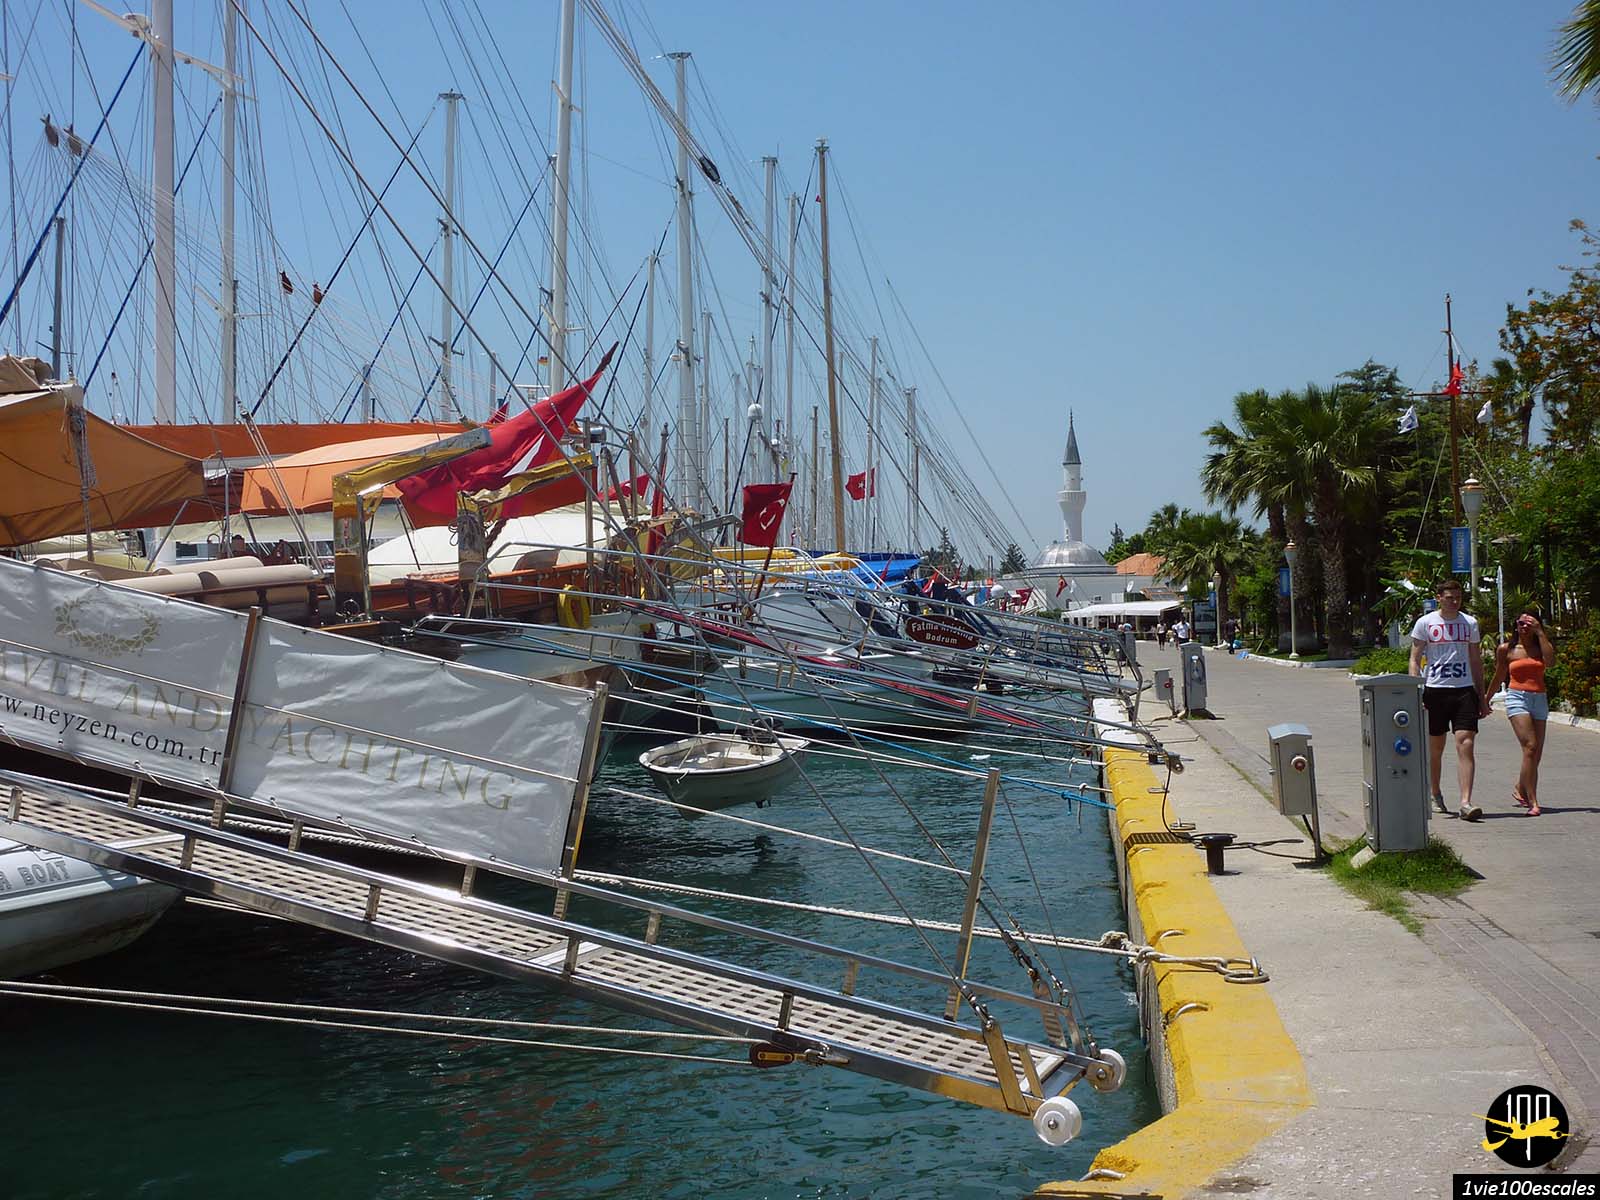 Le port de Bodrum se donne à l'été des allures de St Tropez